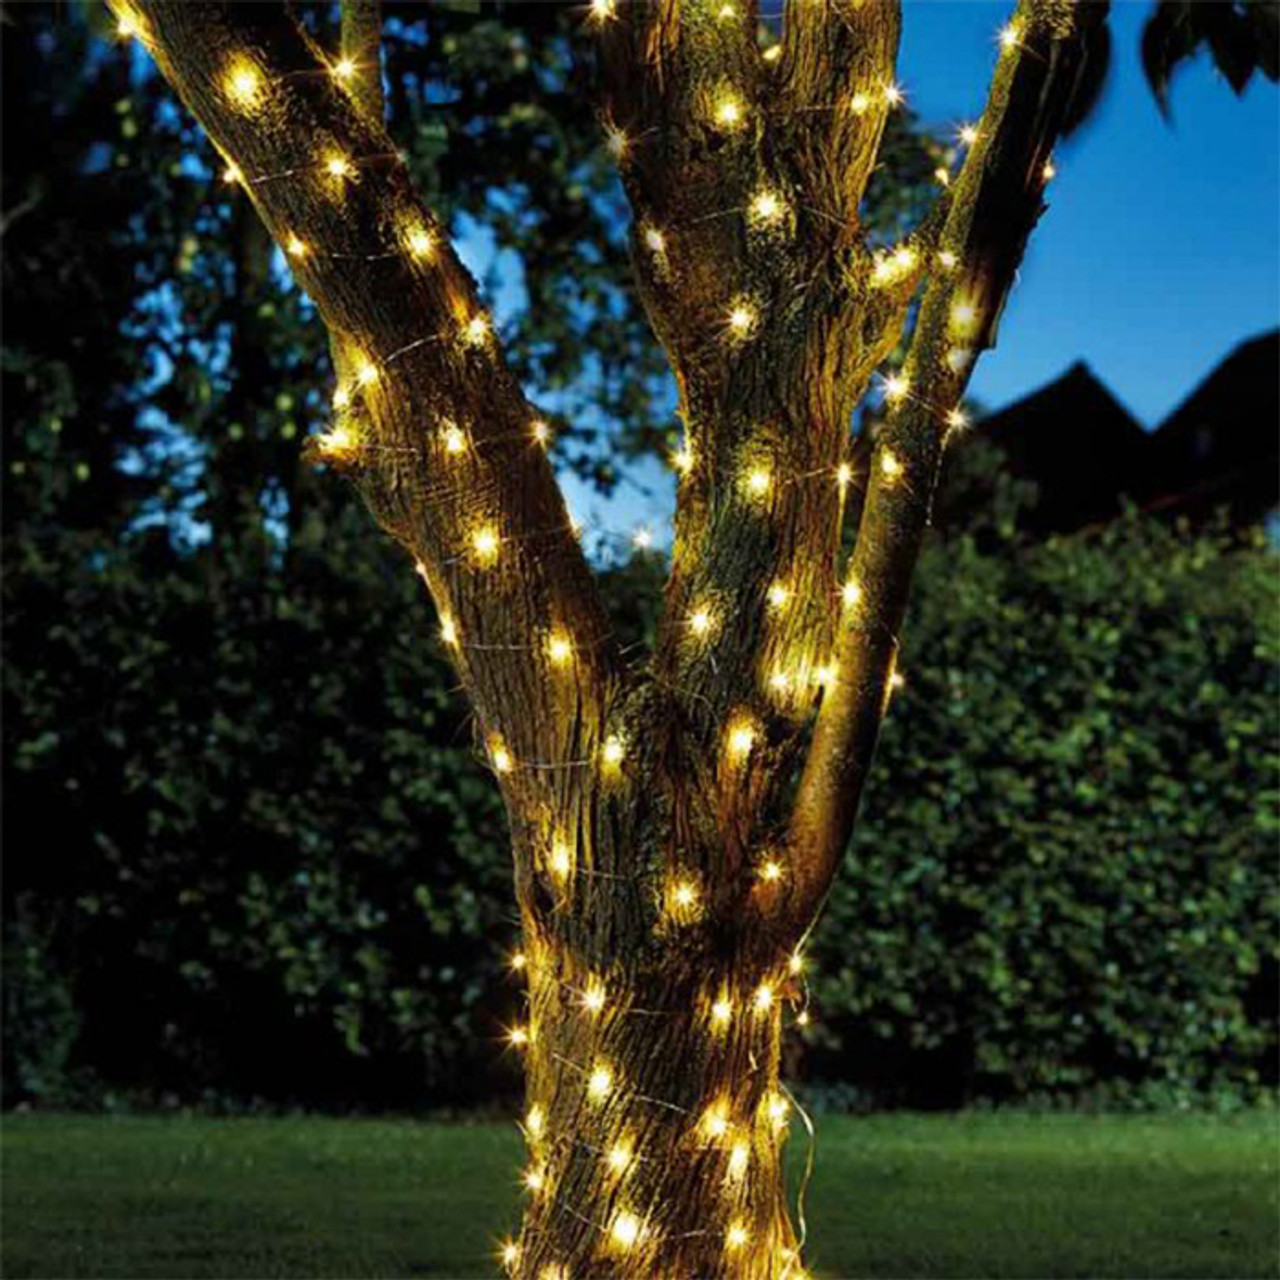 Firefly Solar String Lights - 50 Warm White LEDs